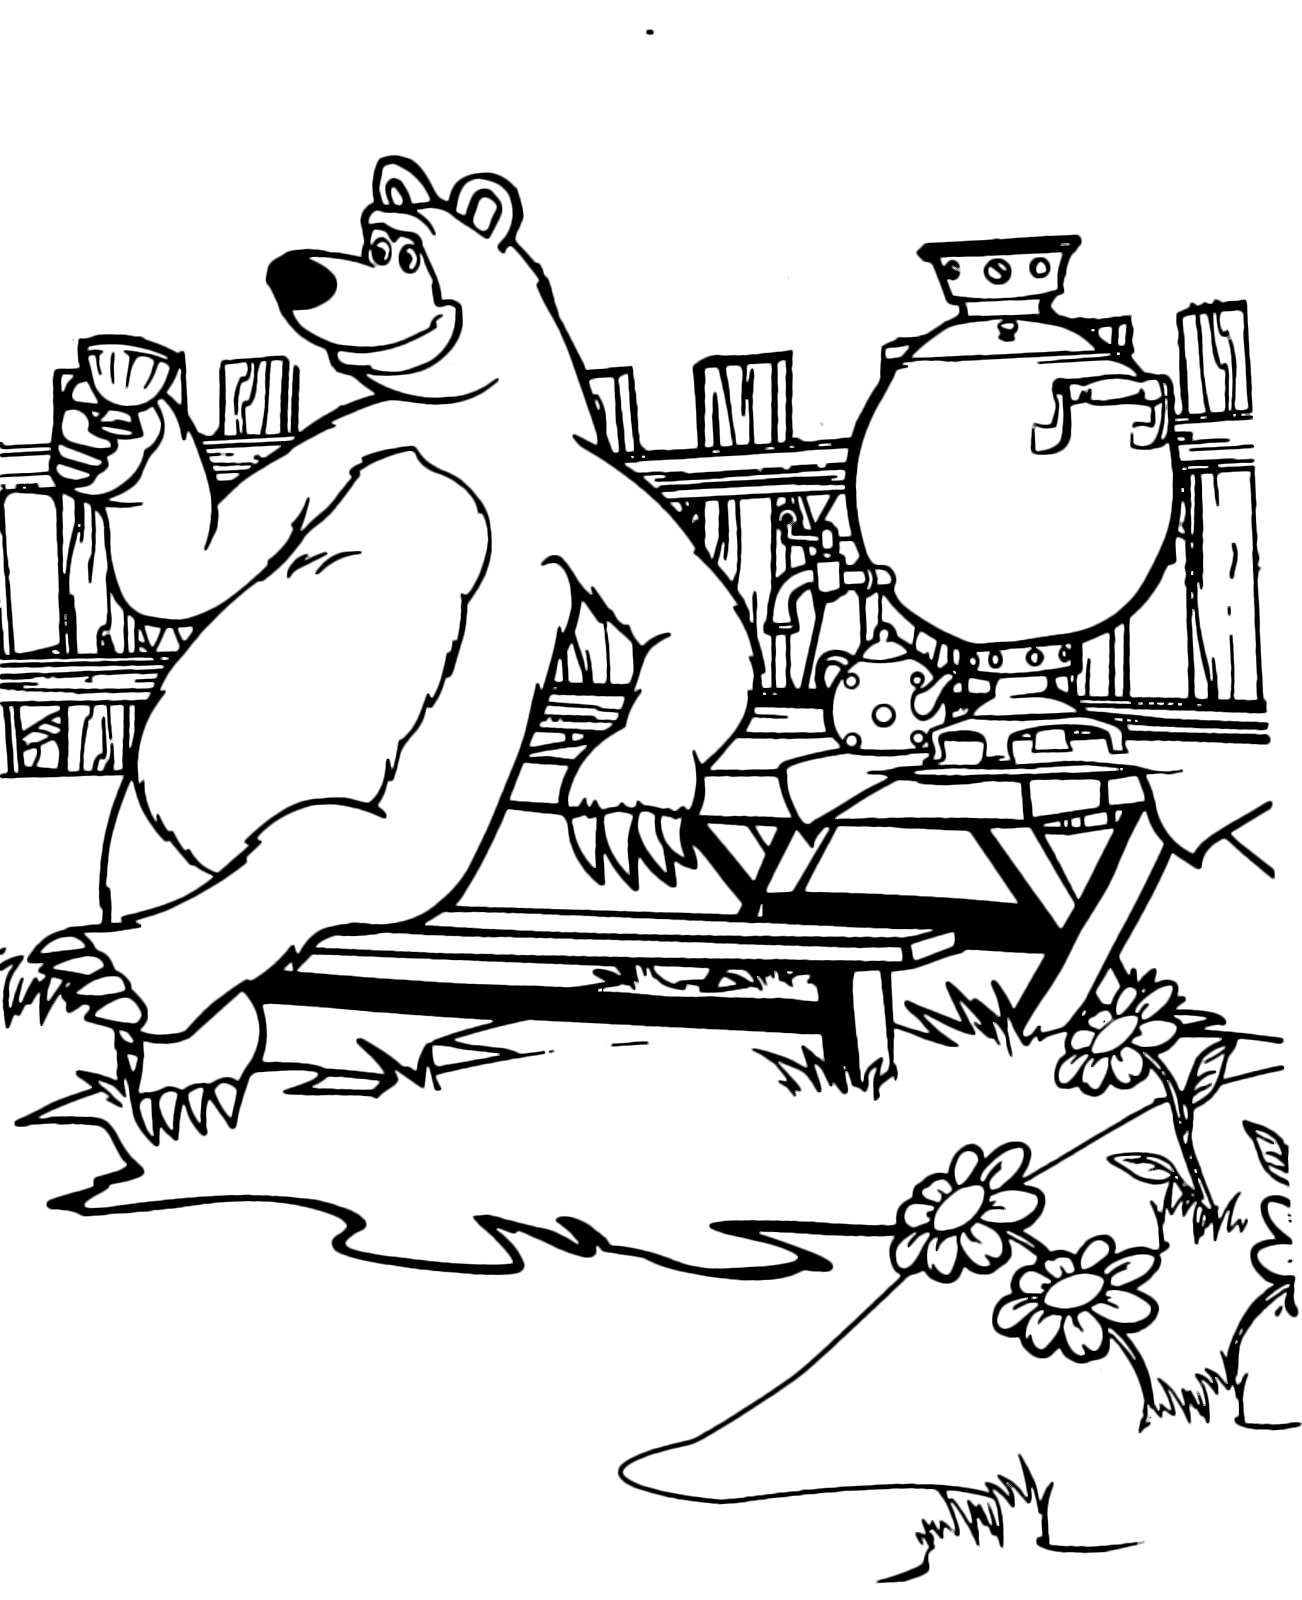 Раскраска для детей маша и медведь онлайн бесплатно: Раскраски Маша и медведь